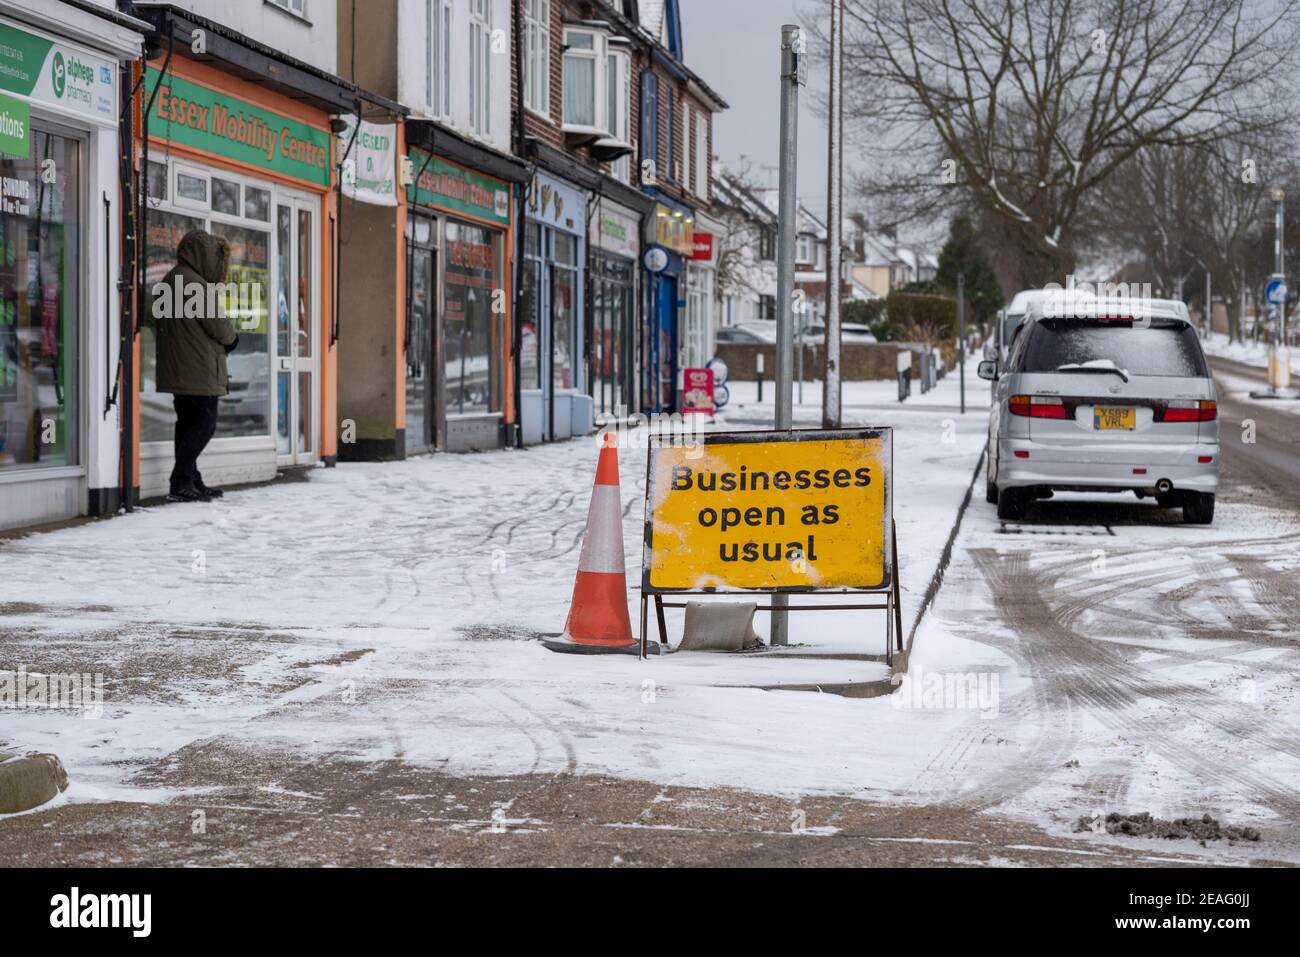 Las empresas abren como de costumbre signo por fila de tiendas en Southend on sea, Essex, Reino Unido, con nieve de Storm Darcy. La mayoría se cerró debido al bloqueo COVID 19. Hielo Foto de stock